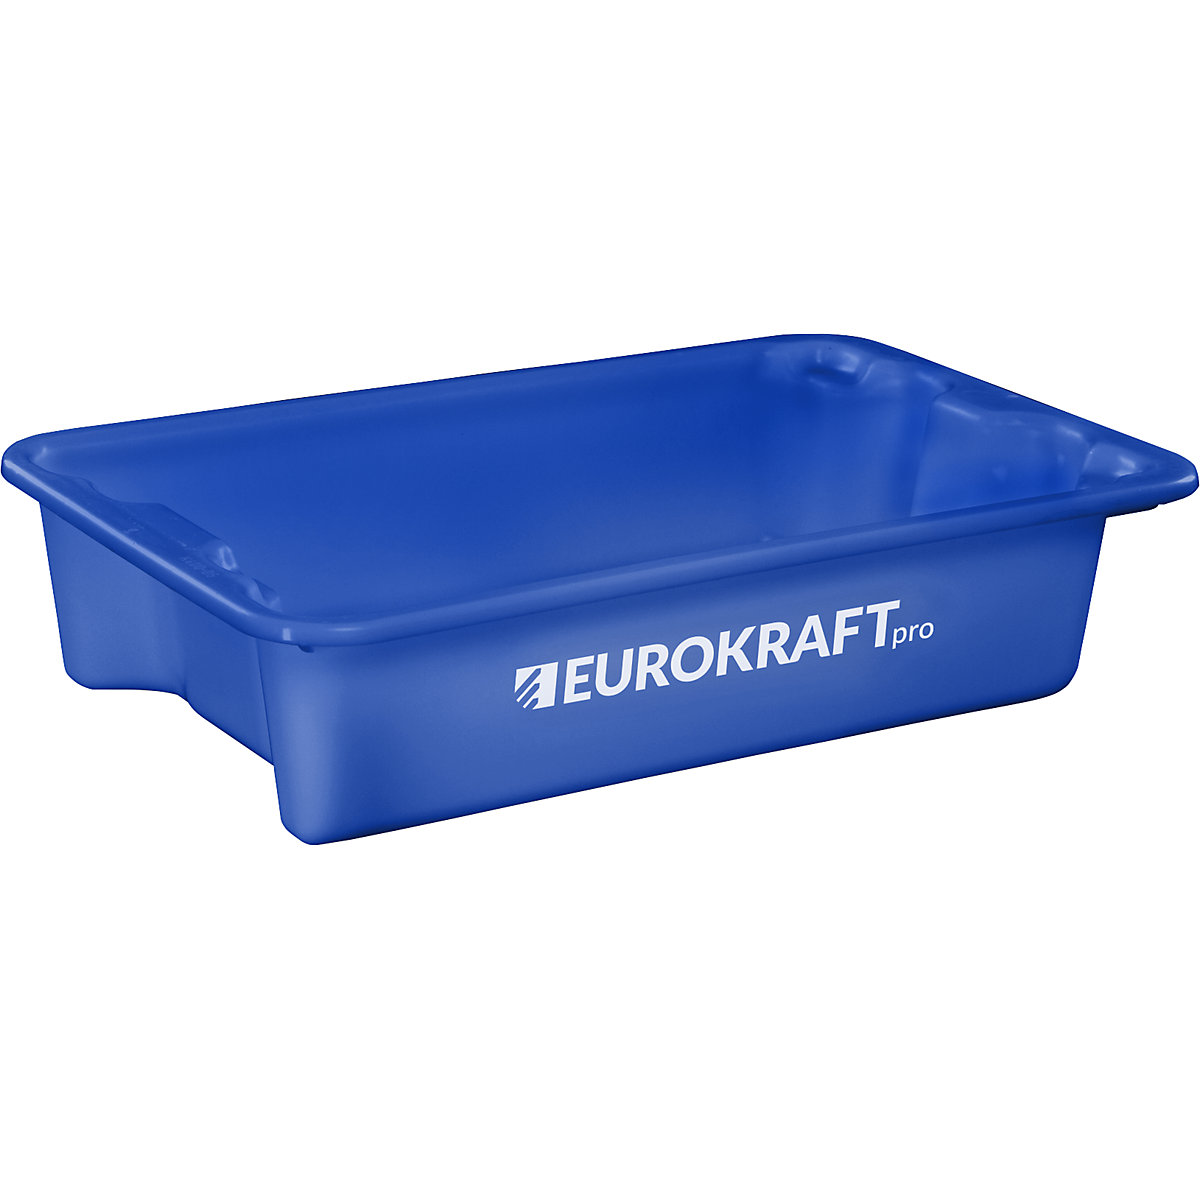 EUROKRAFTpro – Otočná stohovací nádoba z polypropylenu vhodného pro potraviny, obsah 18 litrů, bal.j. 3 ks, stěny a dno plné, modrá